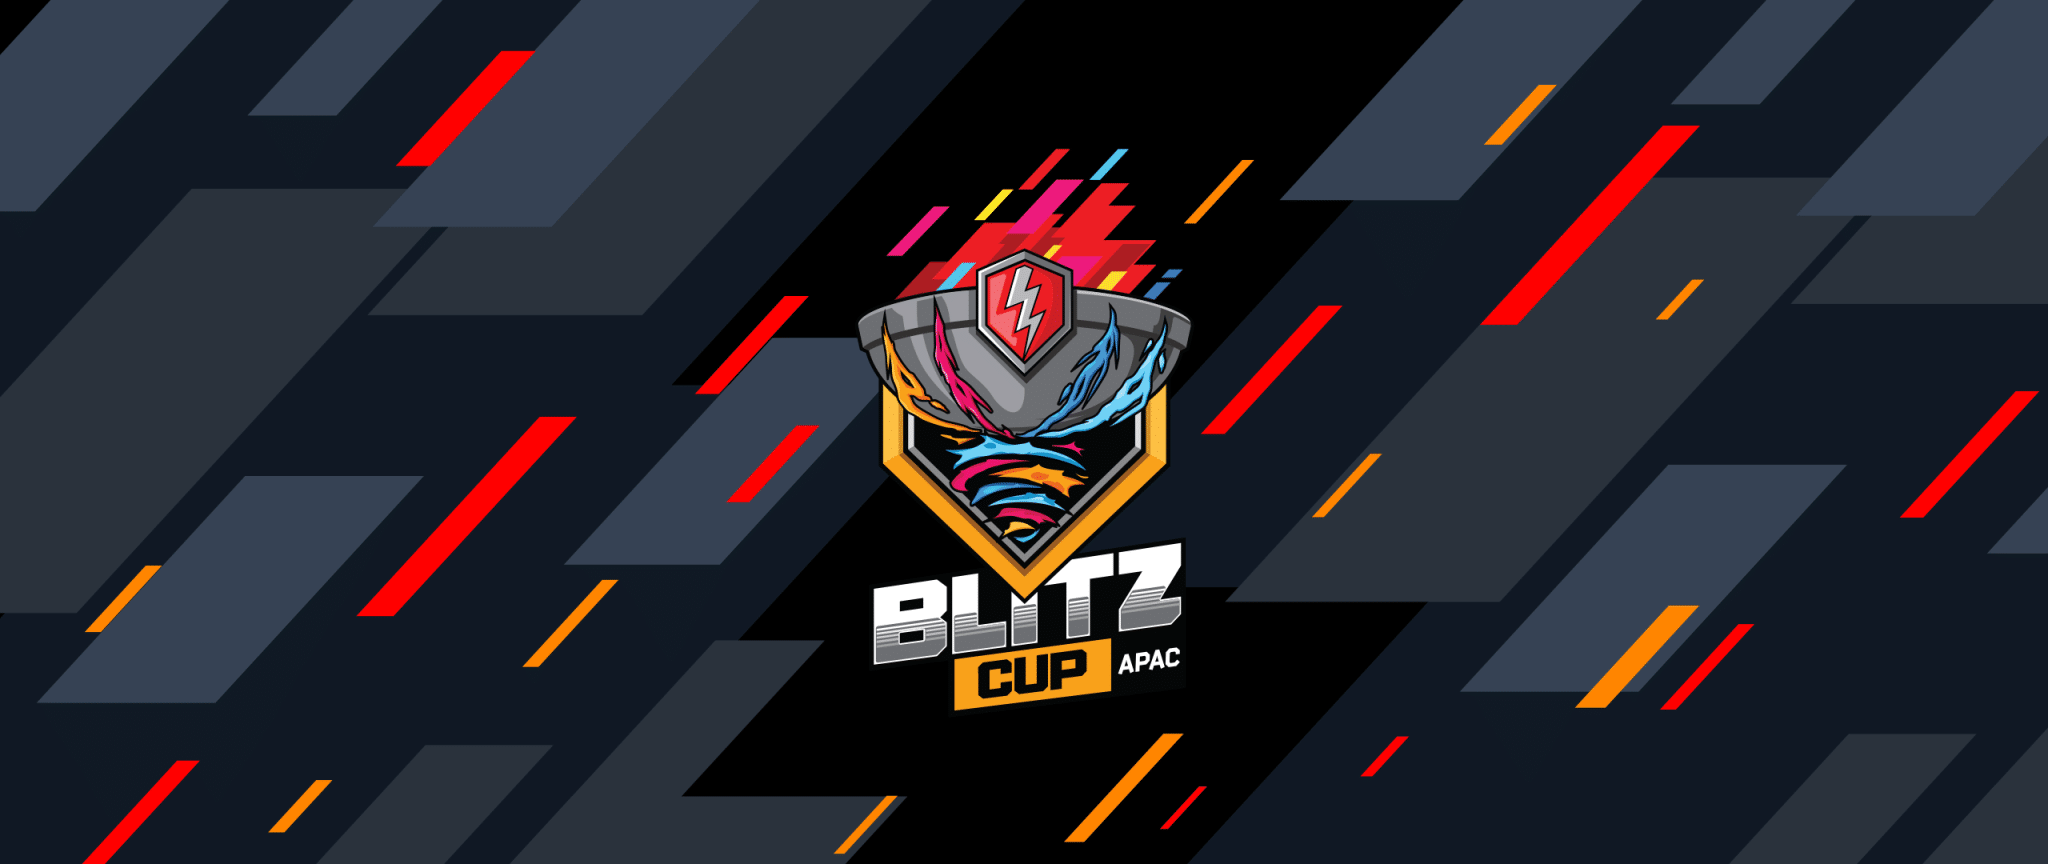 Blitz_cup_21_APAC